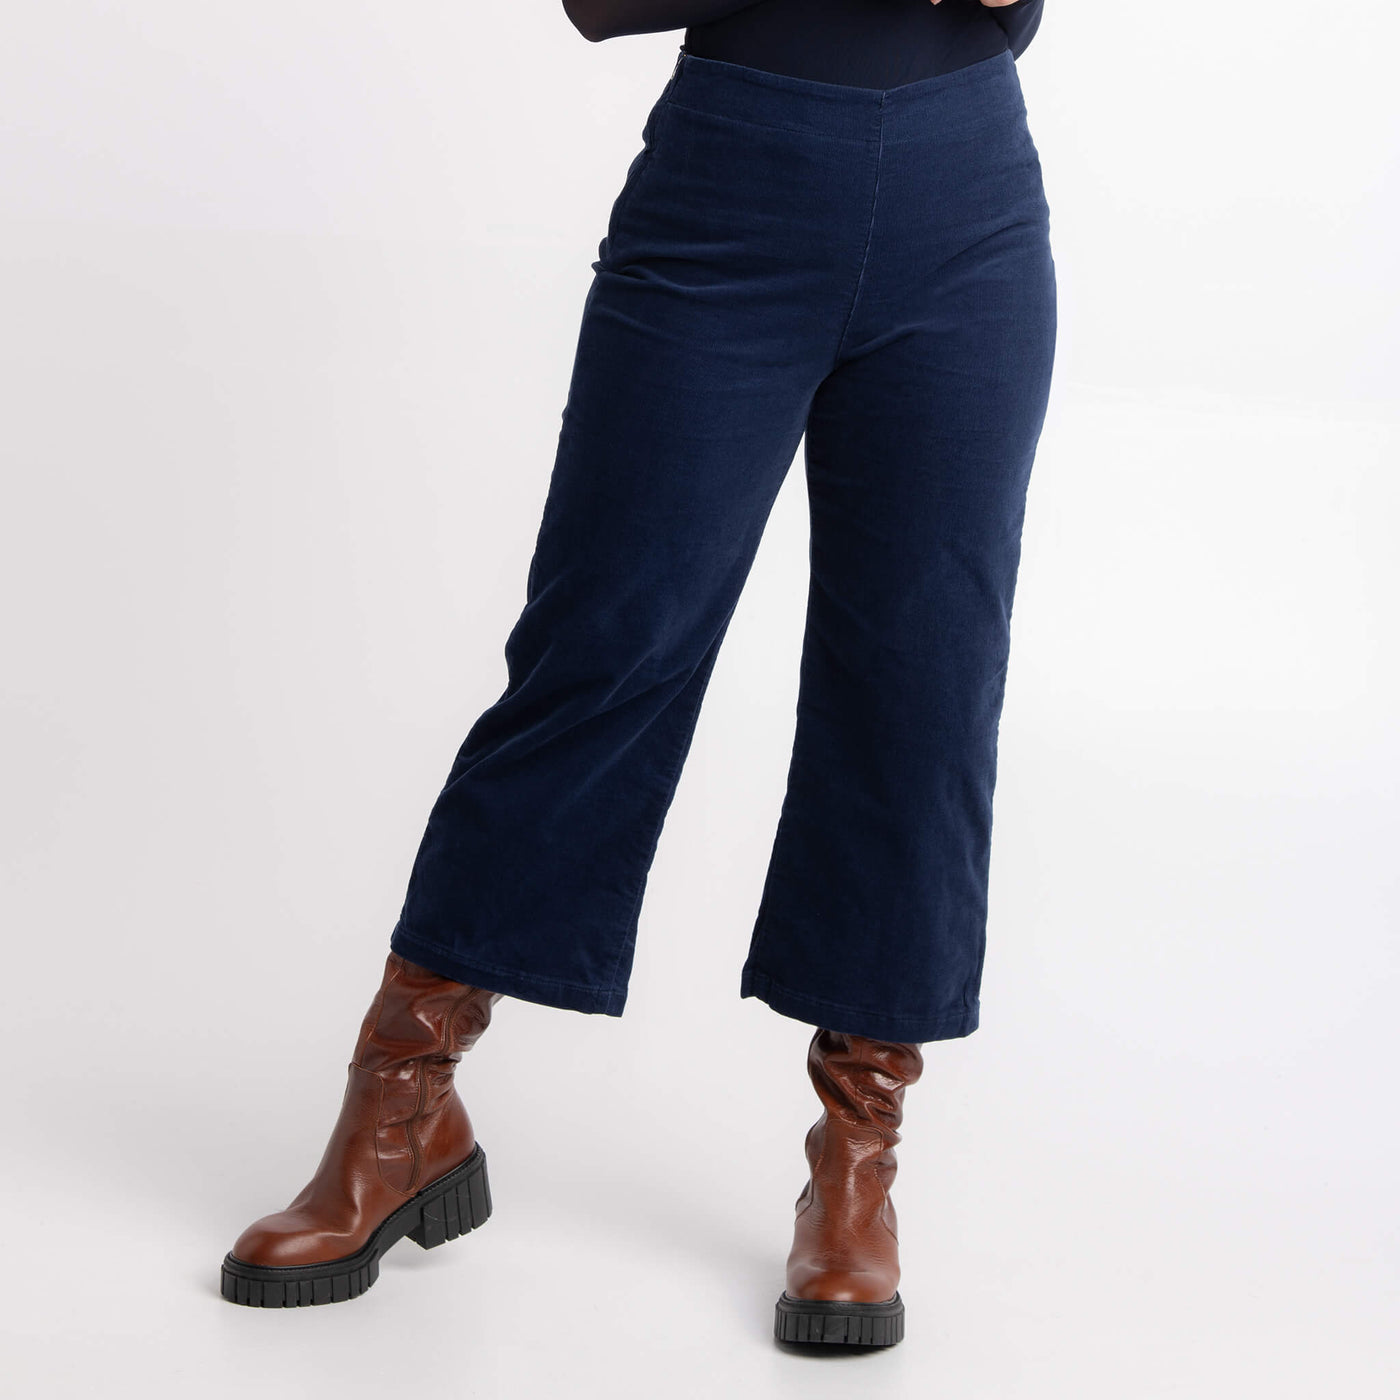 Lily Yoga Jeans marine: une création Québécoise signée KSL